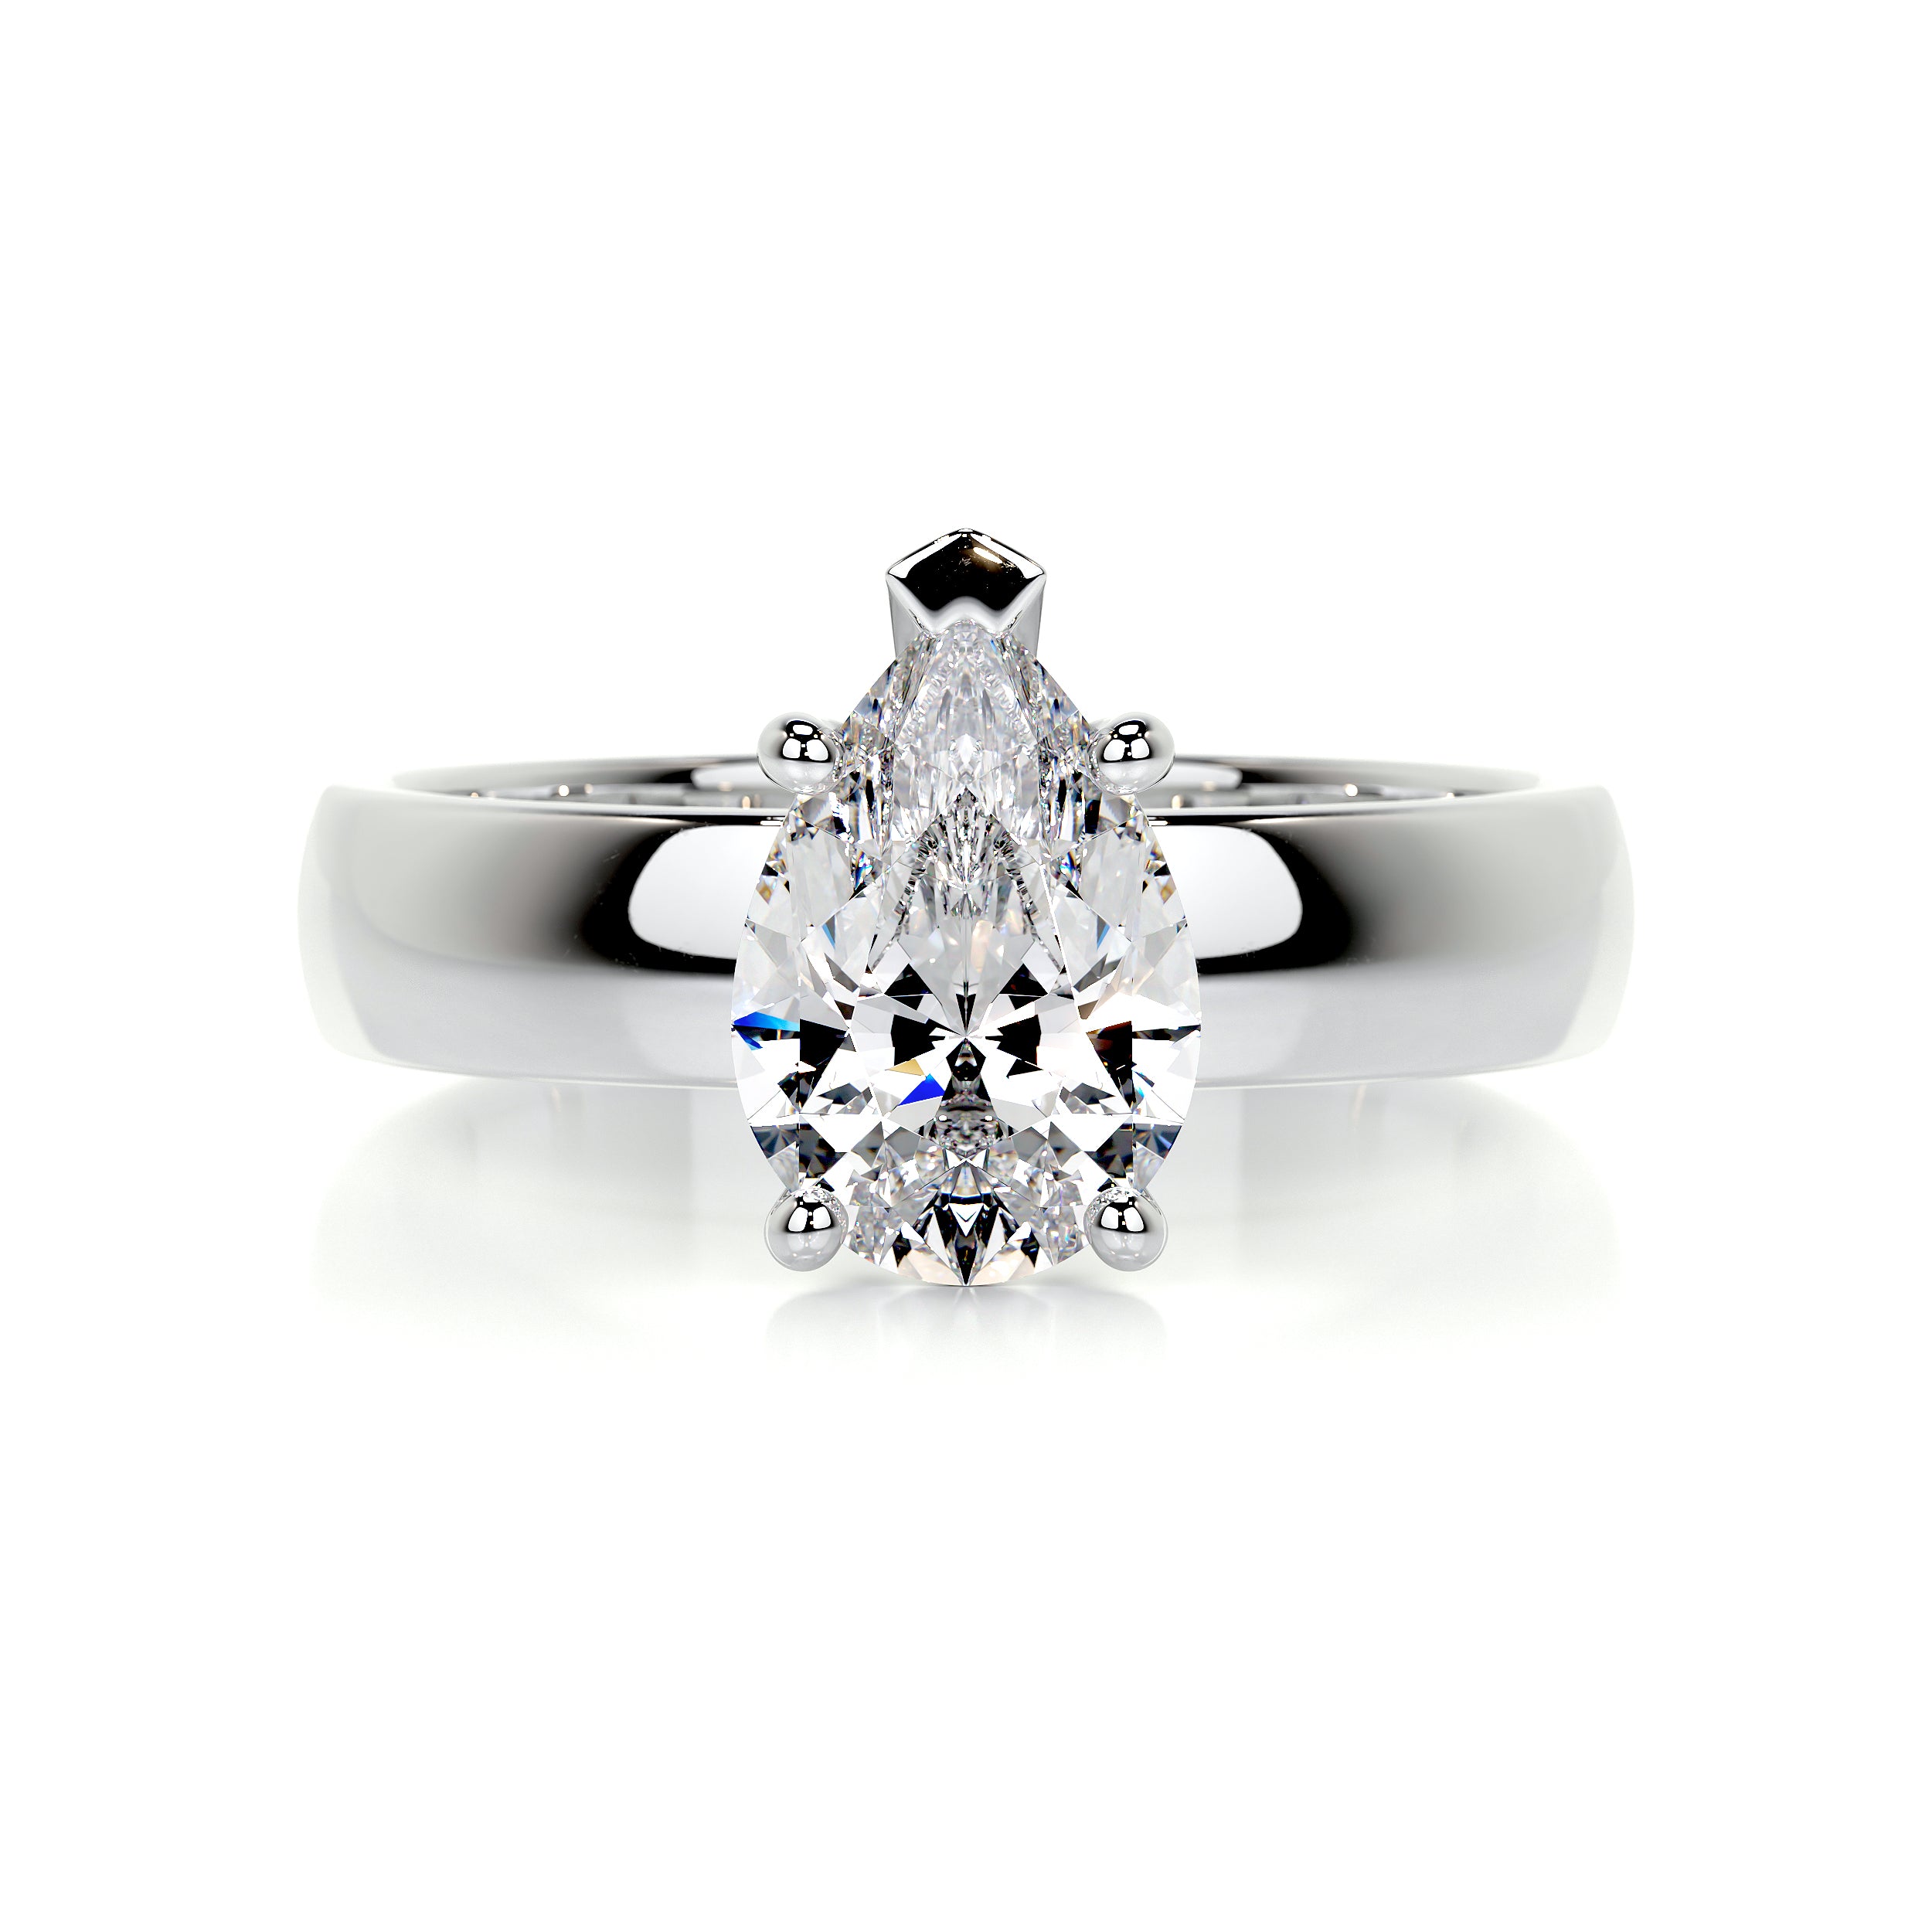 Hannah Diamond Engagement Ring -14K White Gold